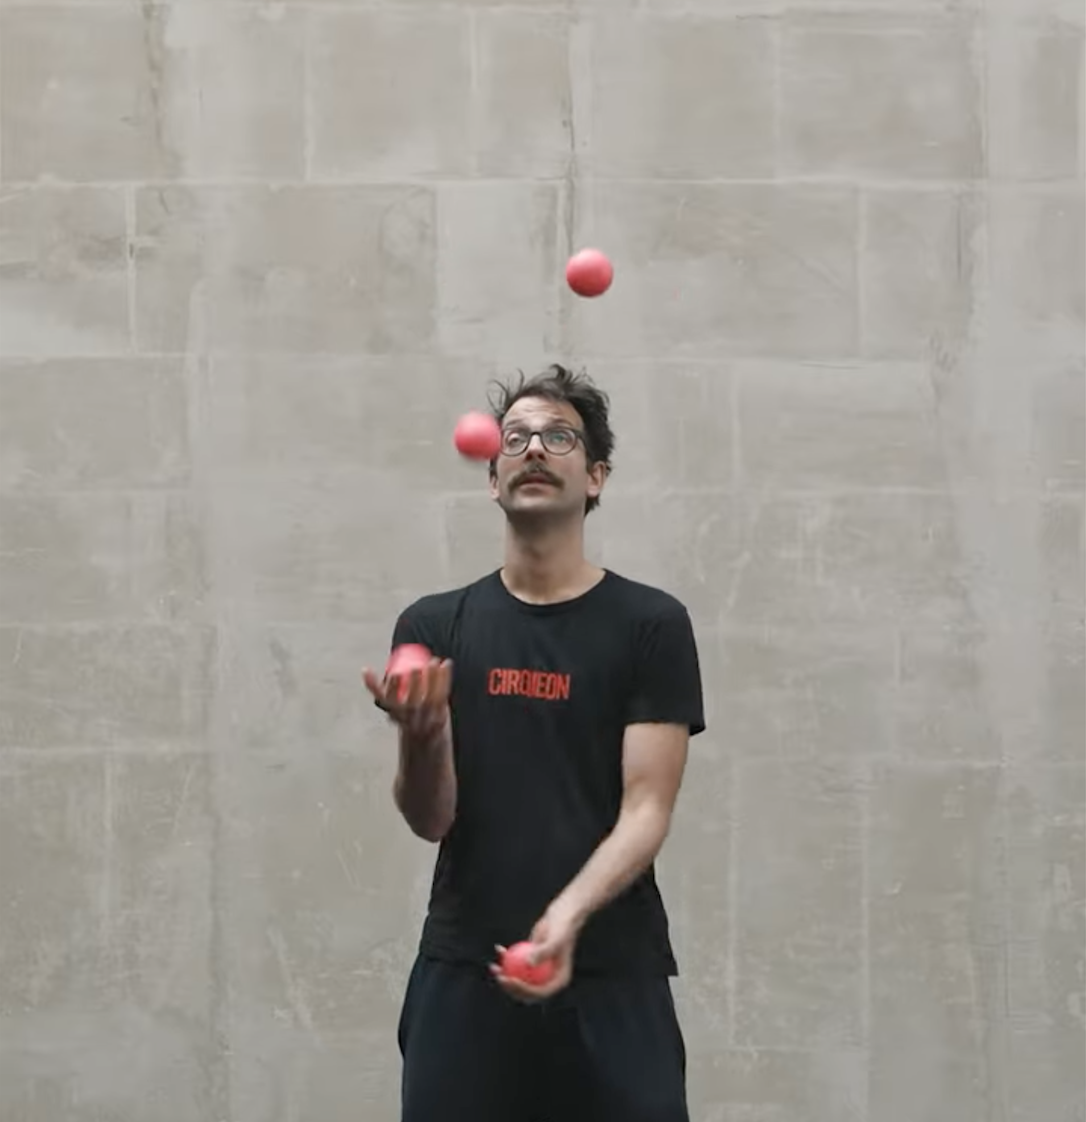 Žonglování ve třech s 5 míčky (3. úroveň)